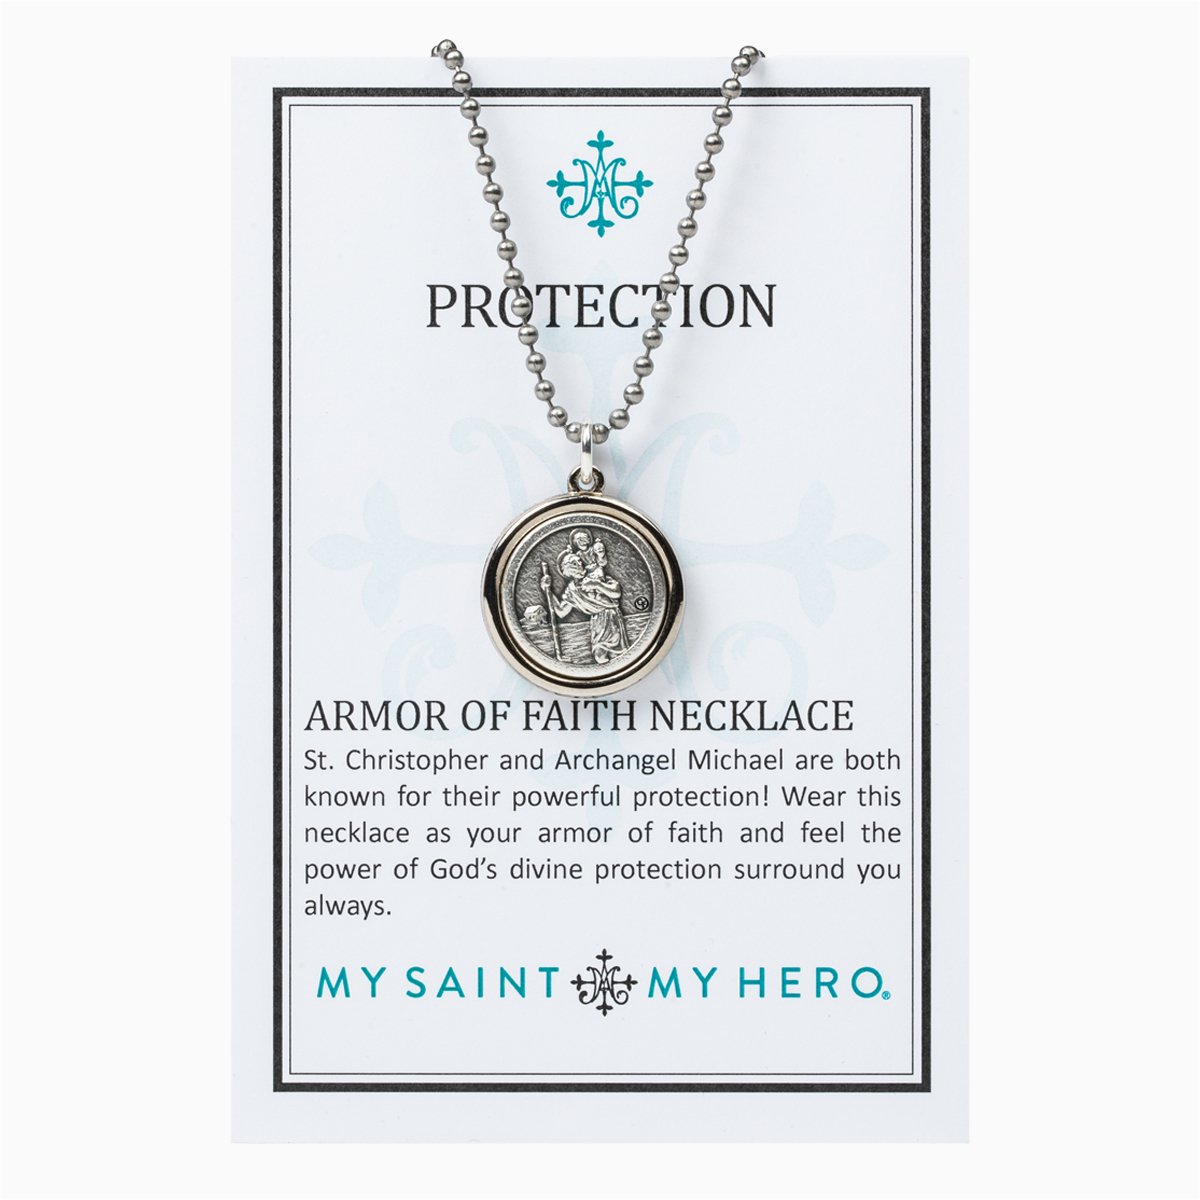 Protection Armor of Faith Necklace - Beadball Chain